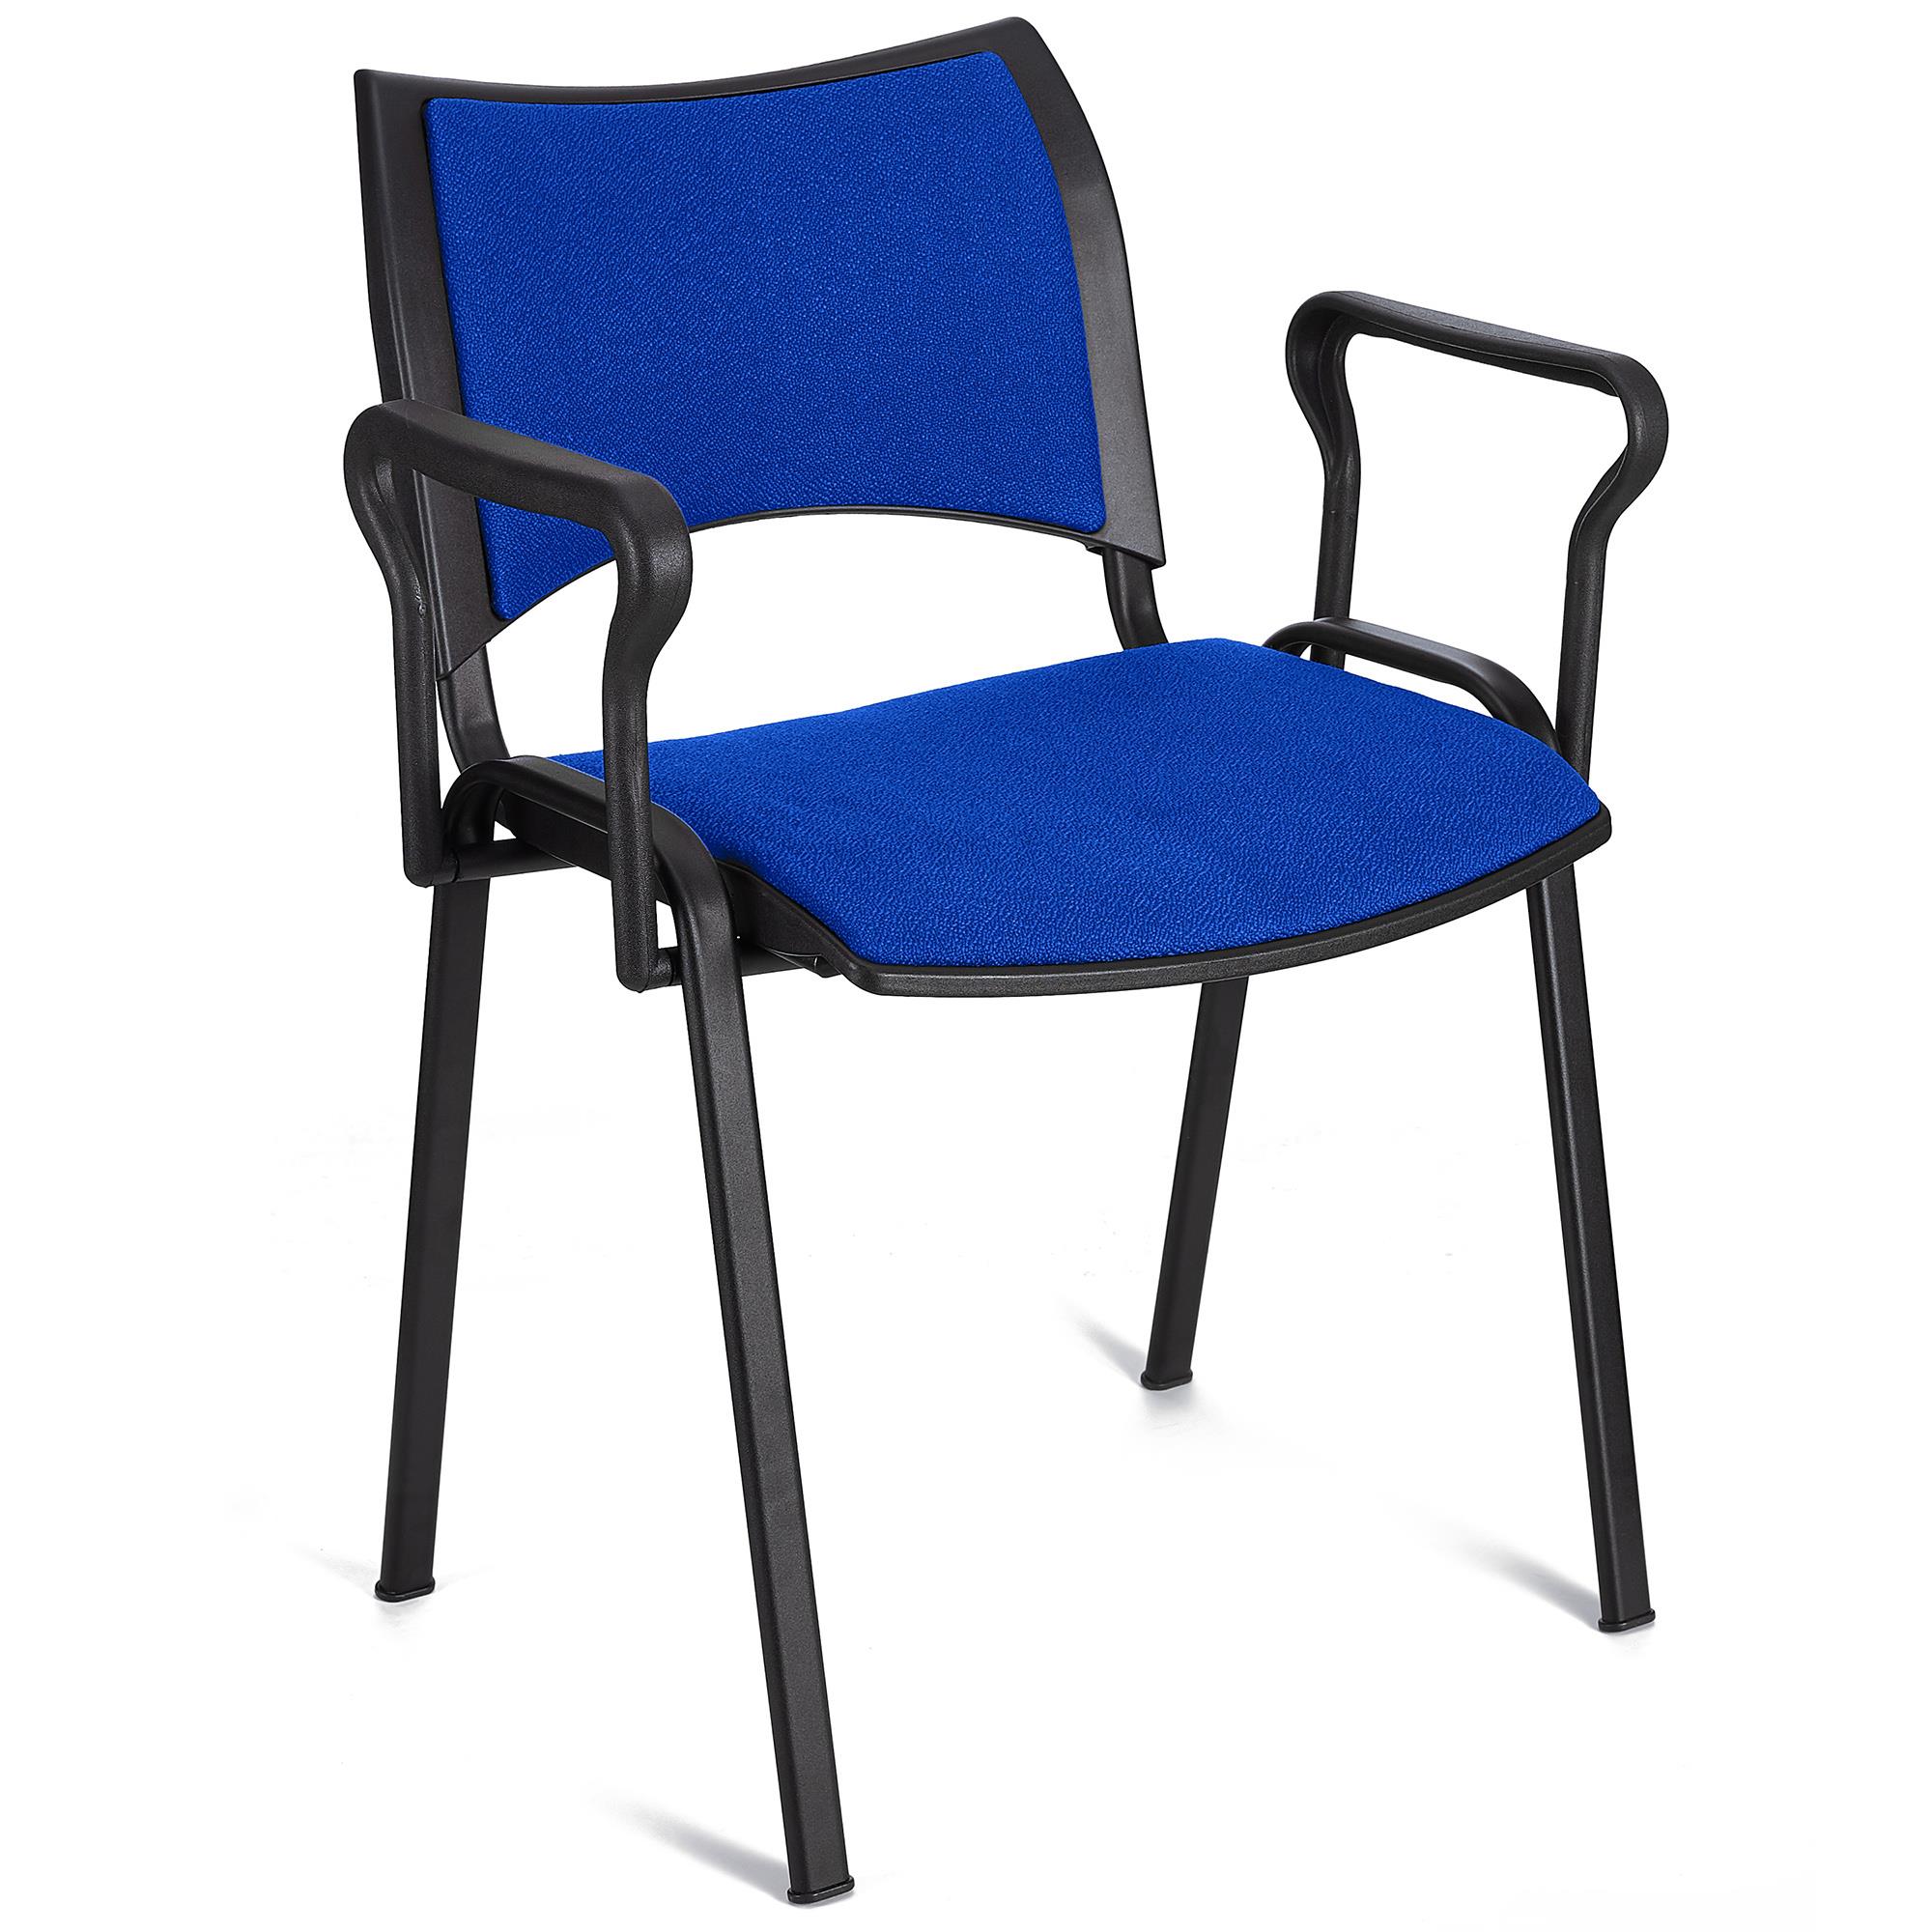 Cadeira de Visita ROMEL COM BRAÇOS, Empilhável, Pernas Pretas, Em Pano, Azul